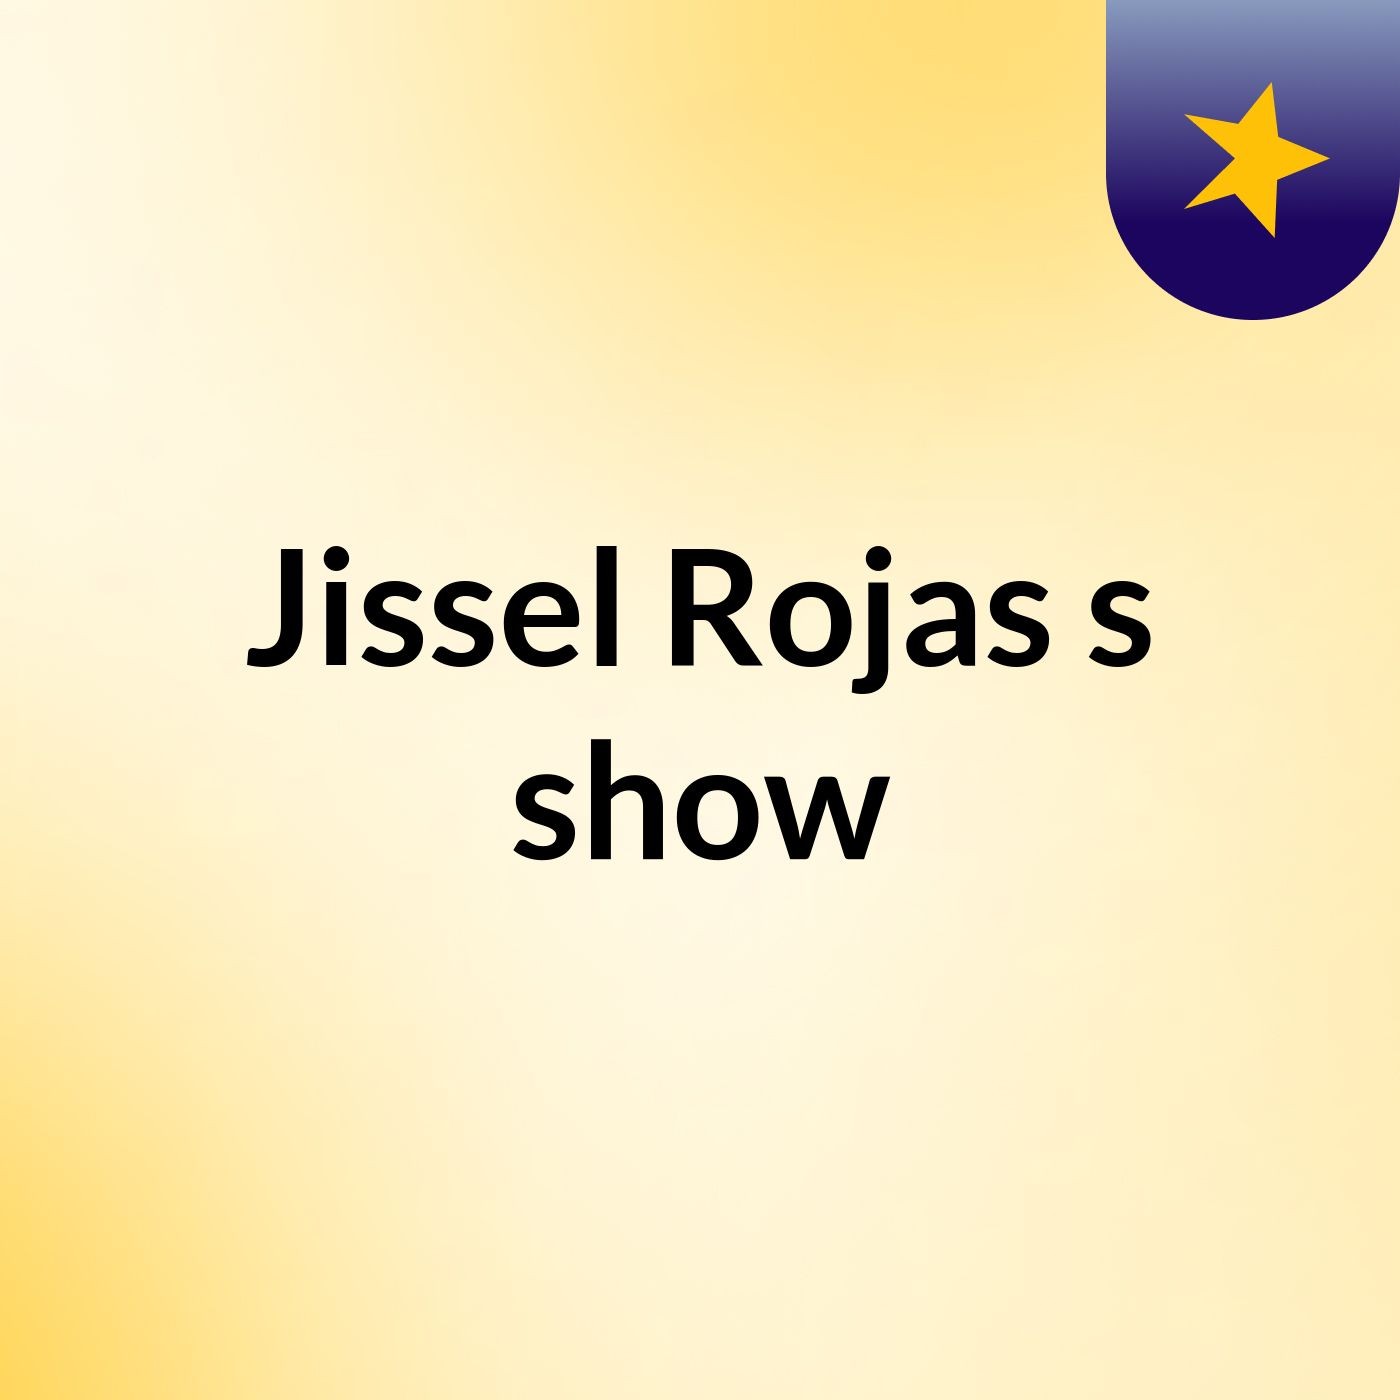 Jissel Rojas's show